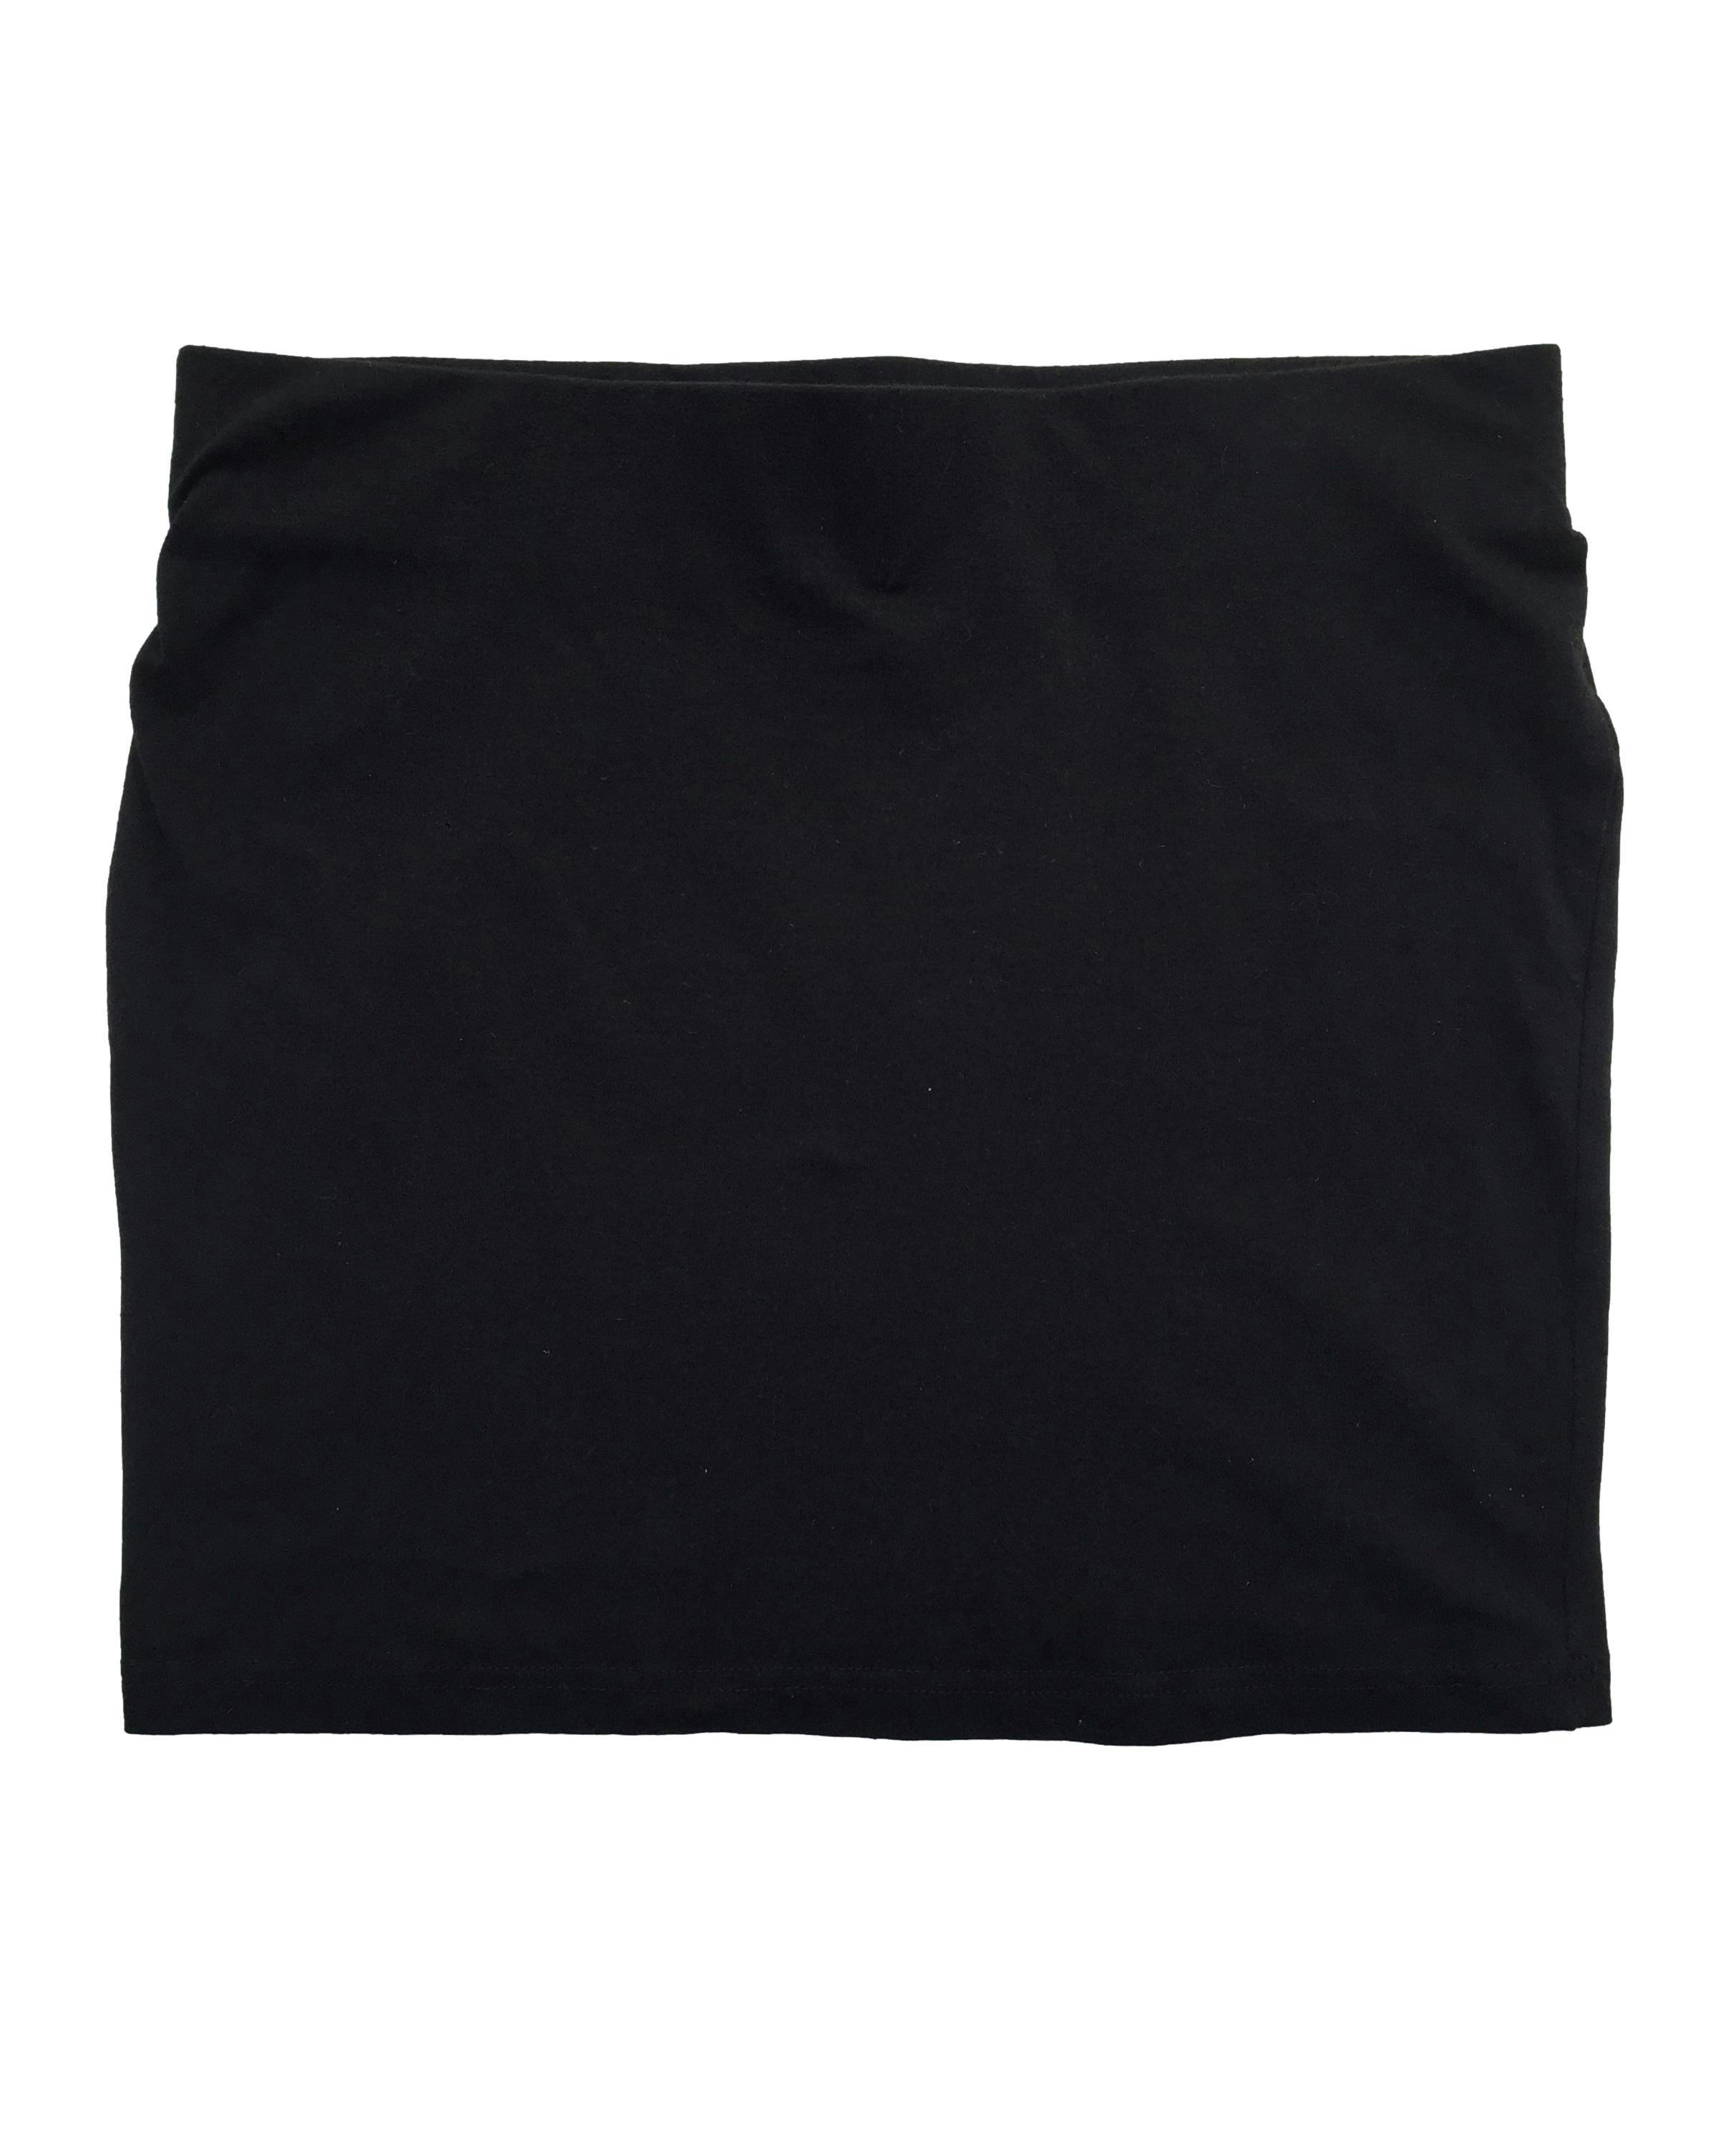 Falda Sybilla negra de algodón stretch con cintura elástica. Cintura 74cm Largo 37cm